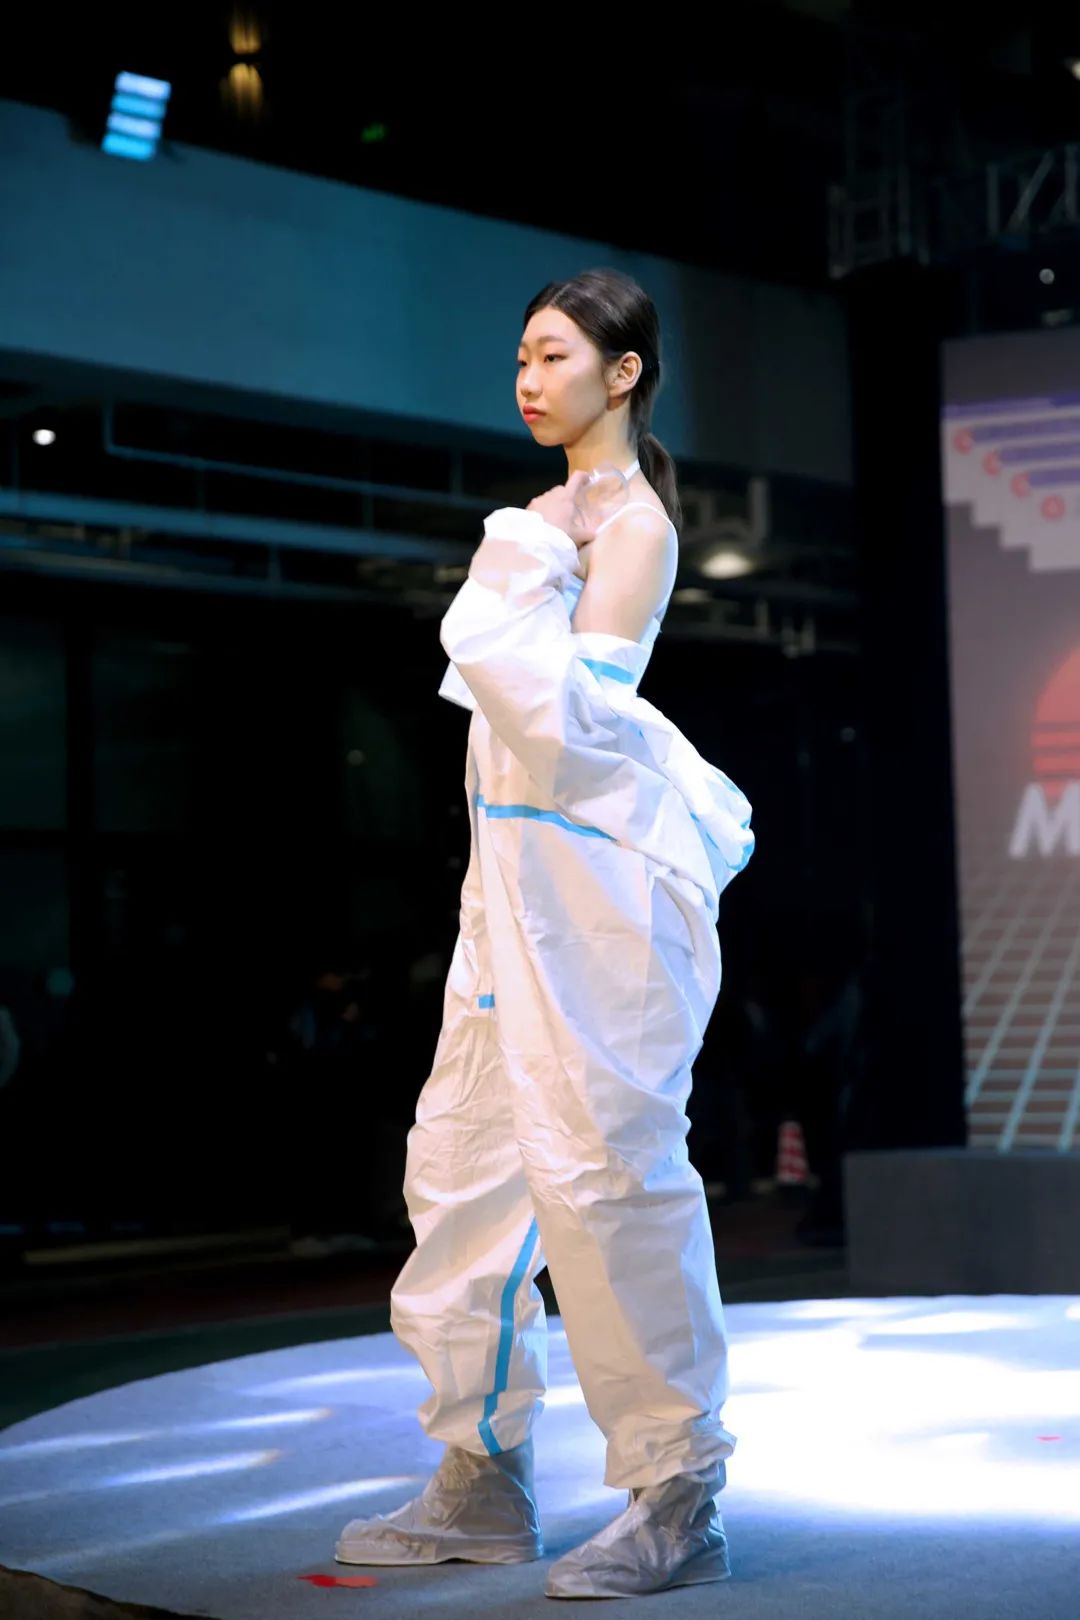 深国交2021 Fashion Show - 校园活动|疫情之下的时尚  深国交 深圳国际交流学院 第24张